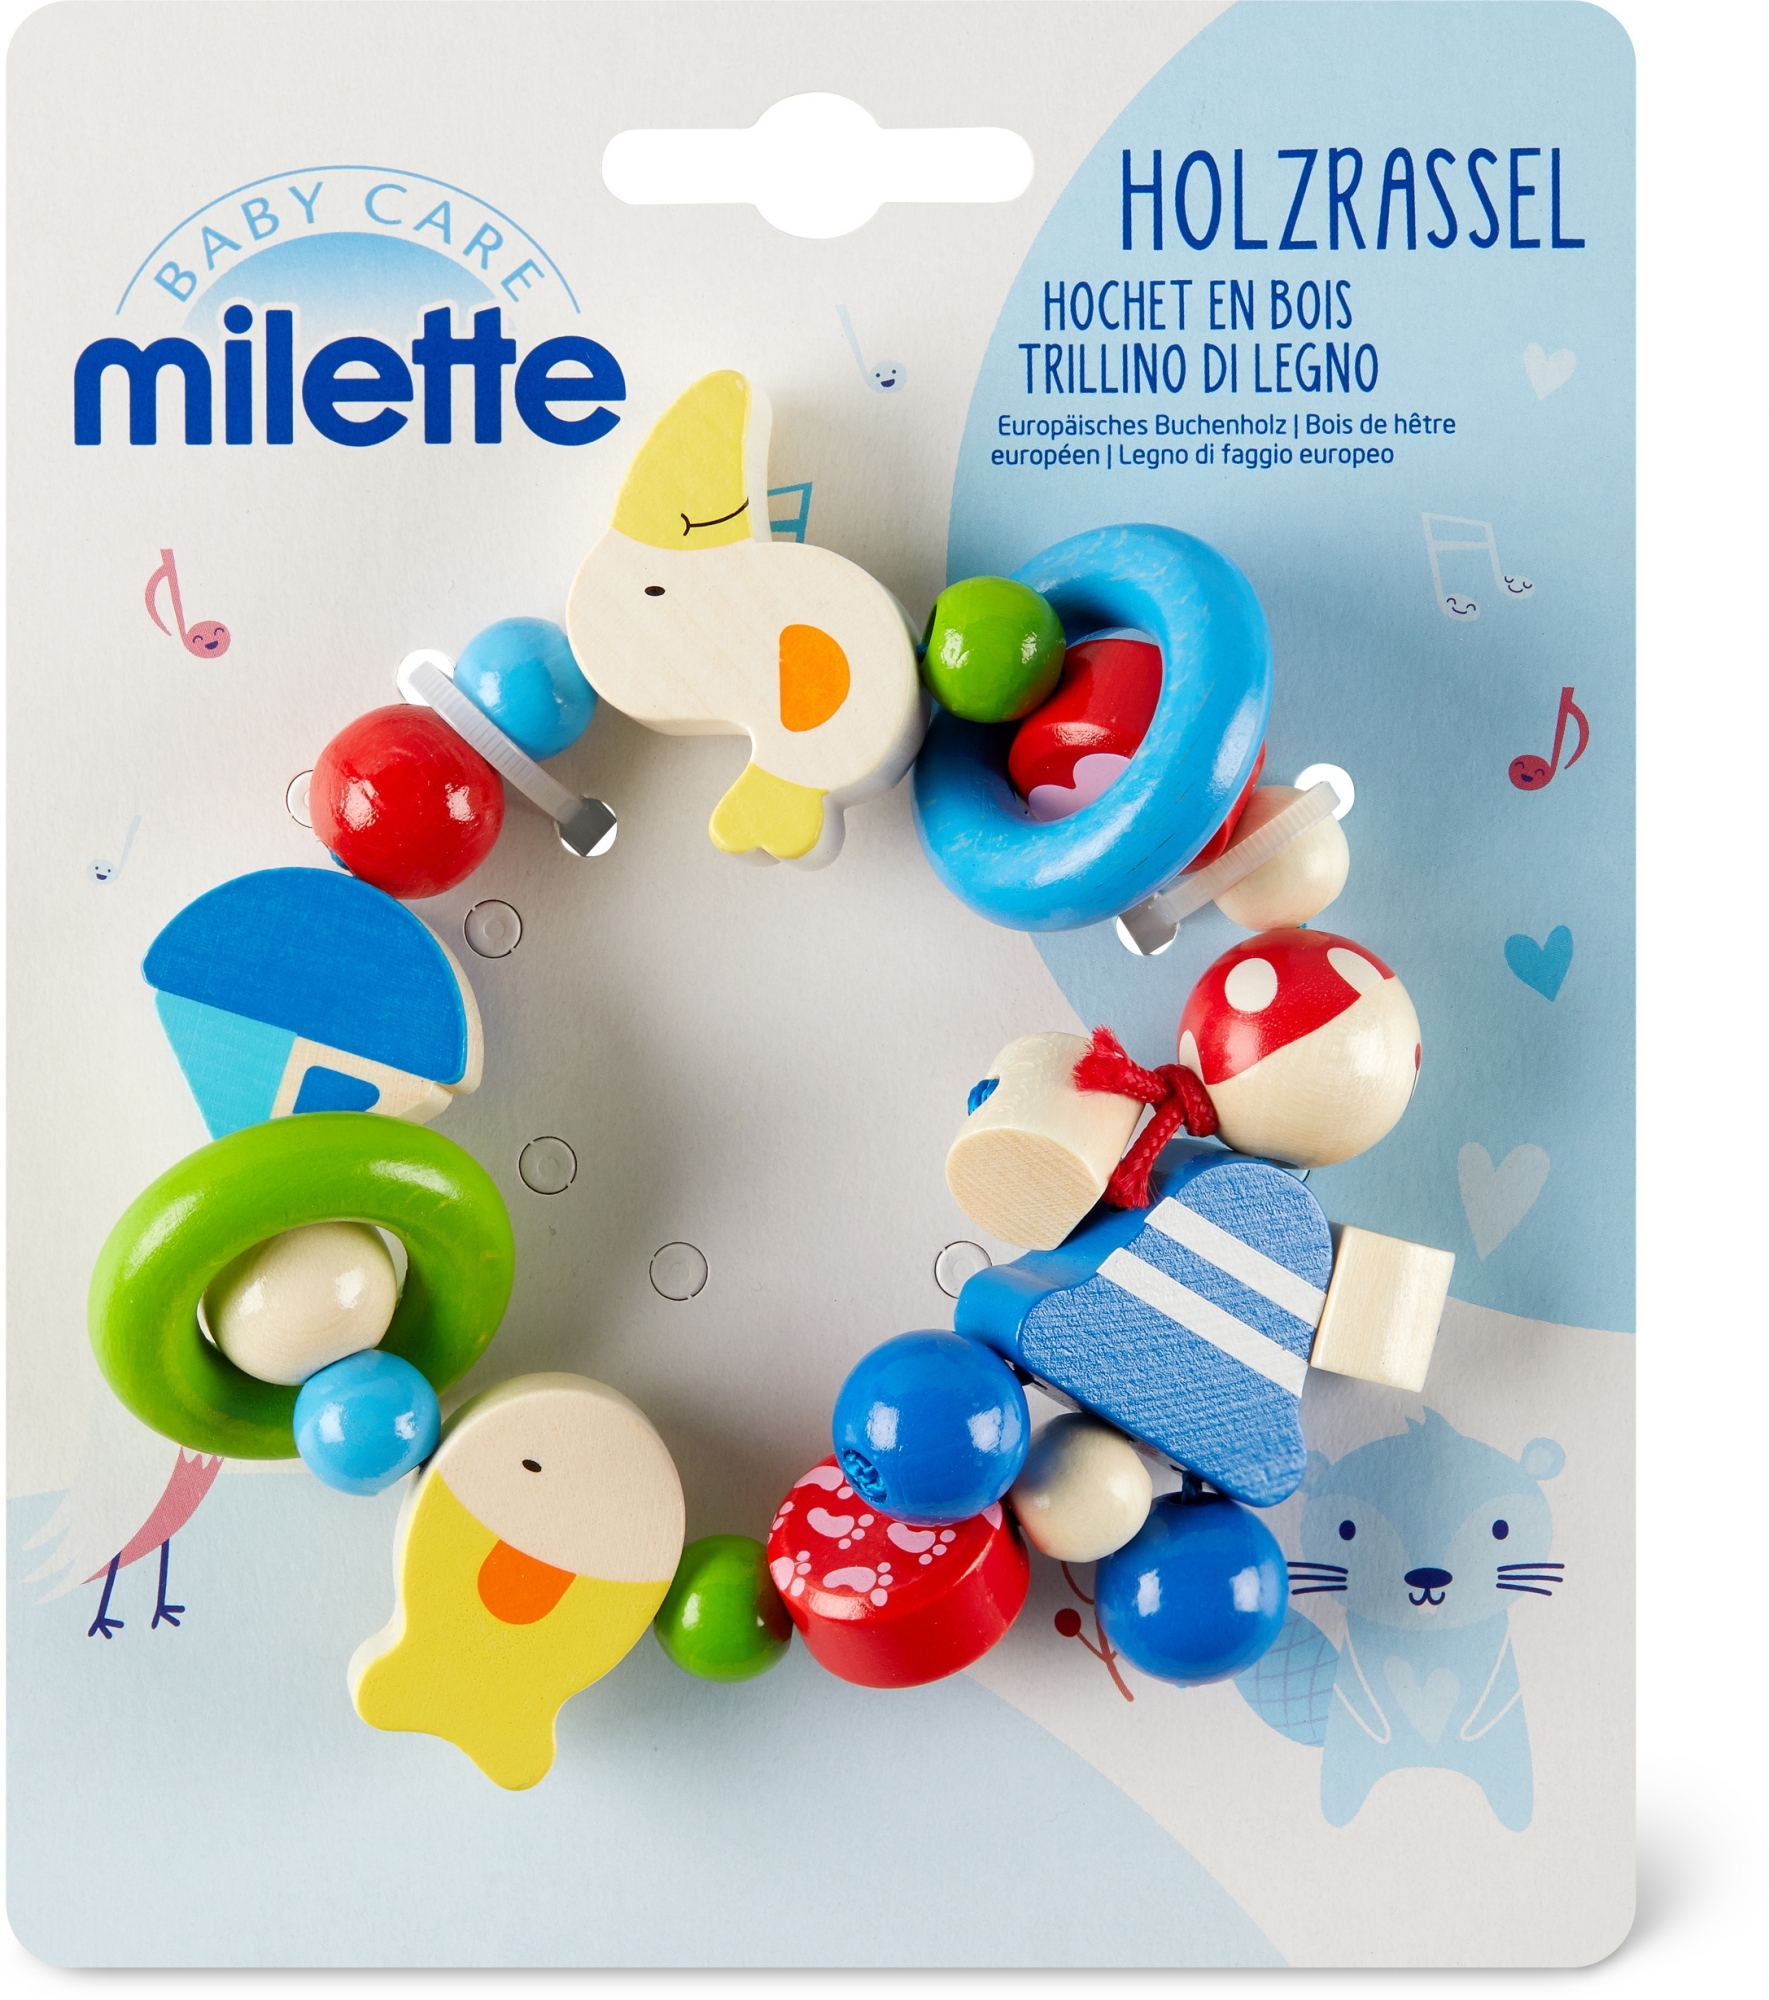 Le produit de la marque Milette est en vente depuis le 1er janvier 2017 déjà.